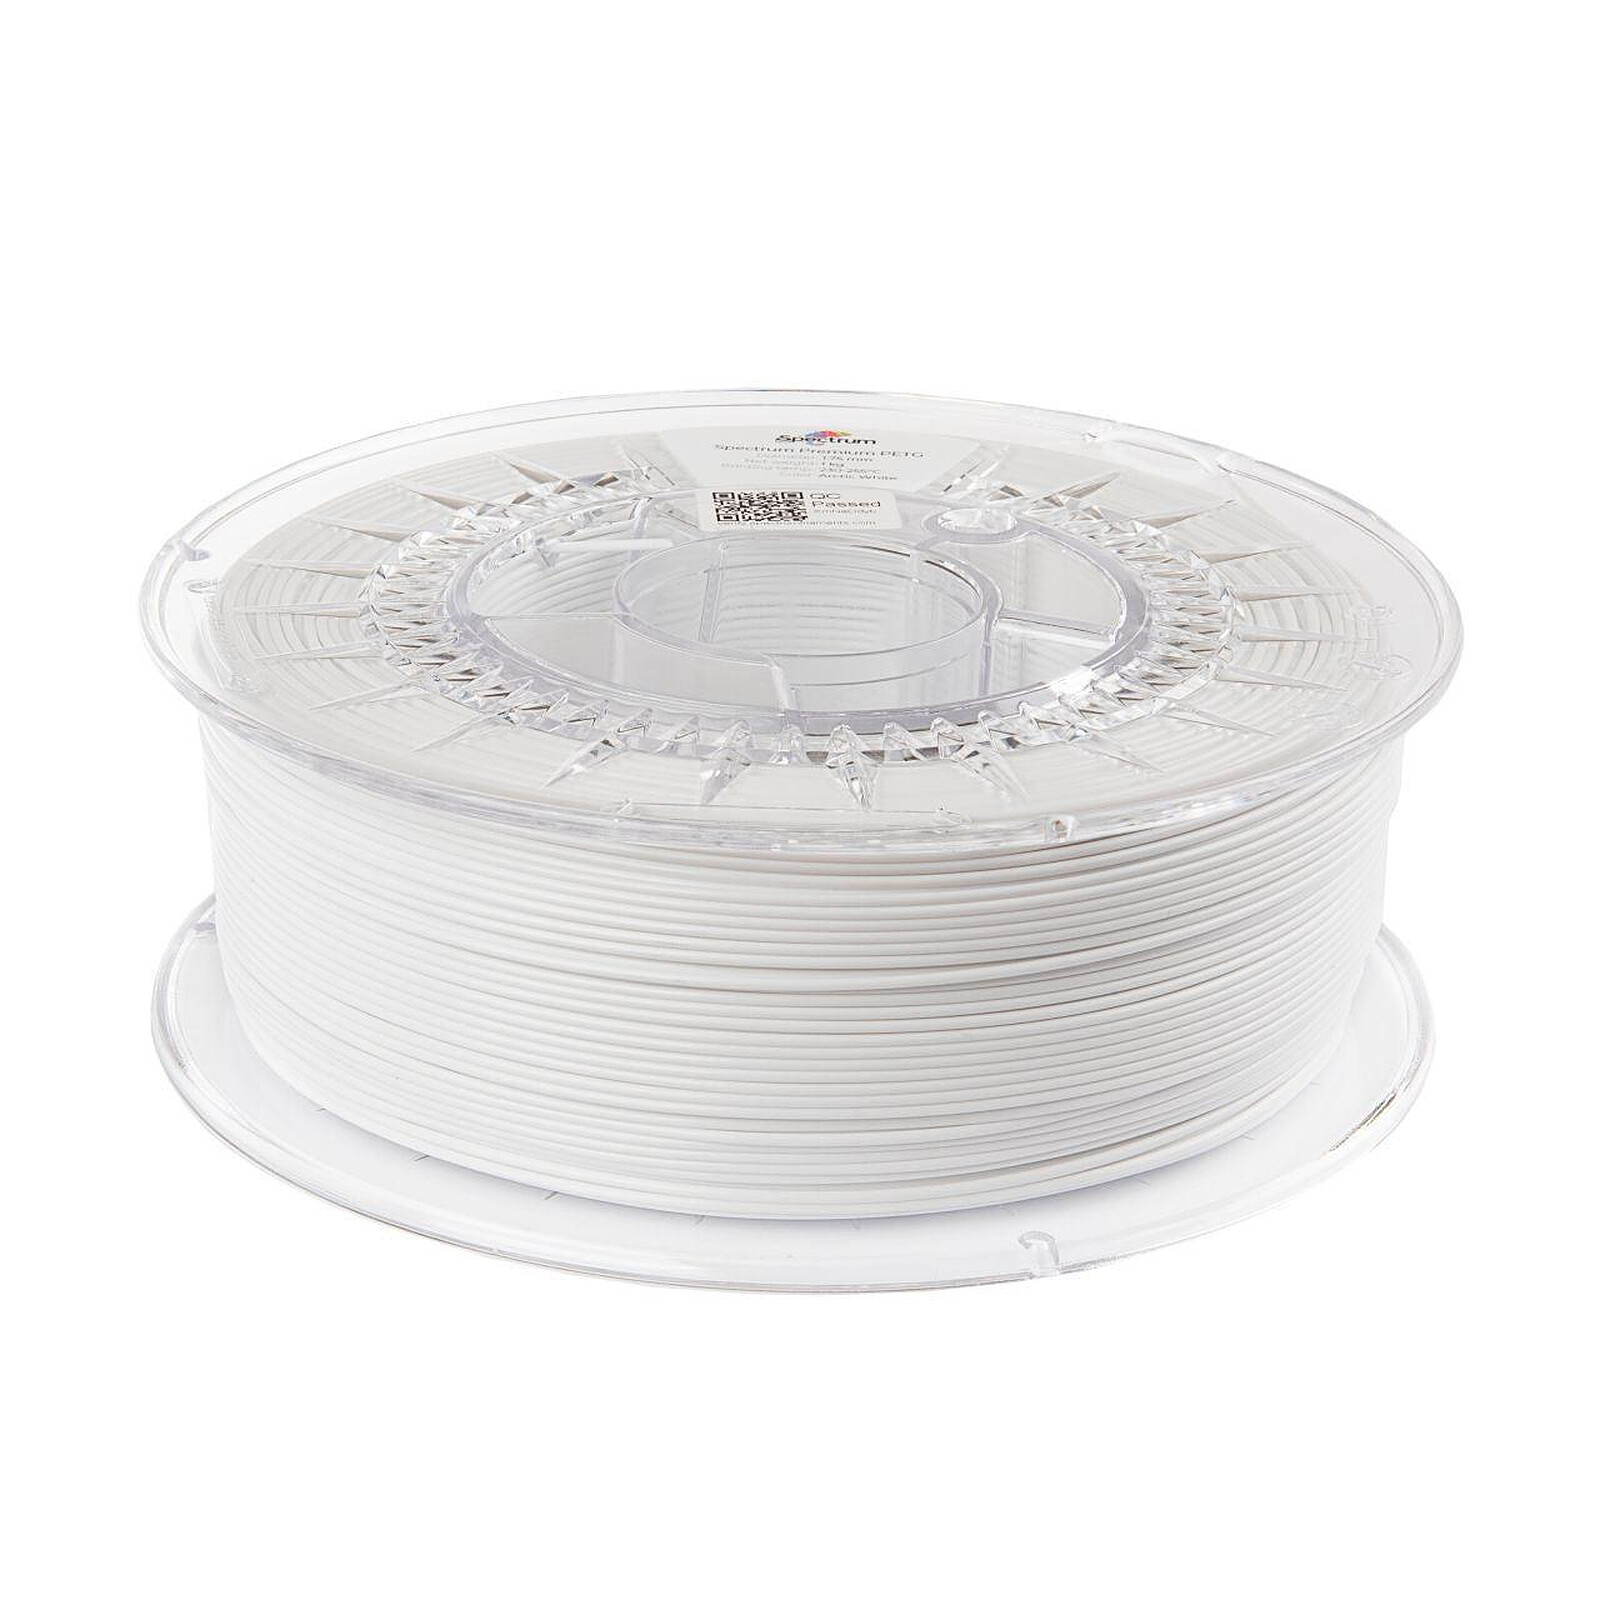 Spectrum Premium PET-G blanc (arctic white) 1,75 mm 1kg - Filament